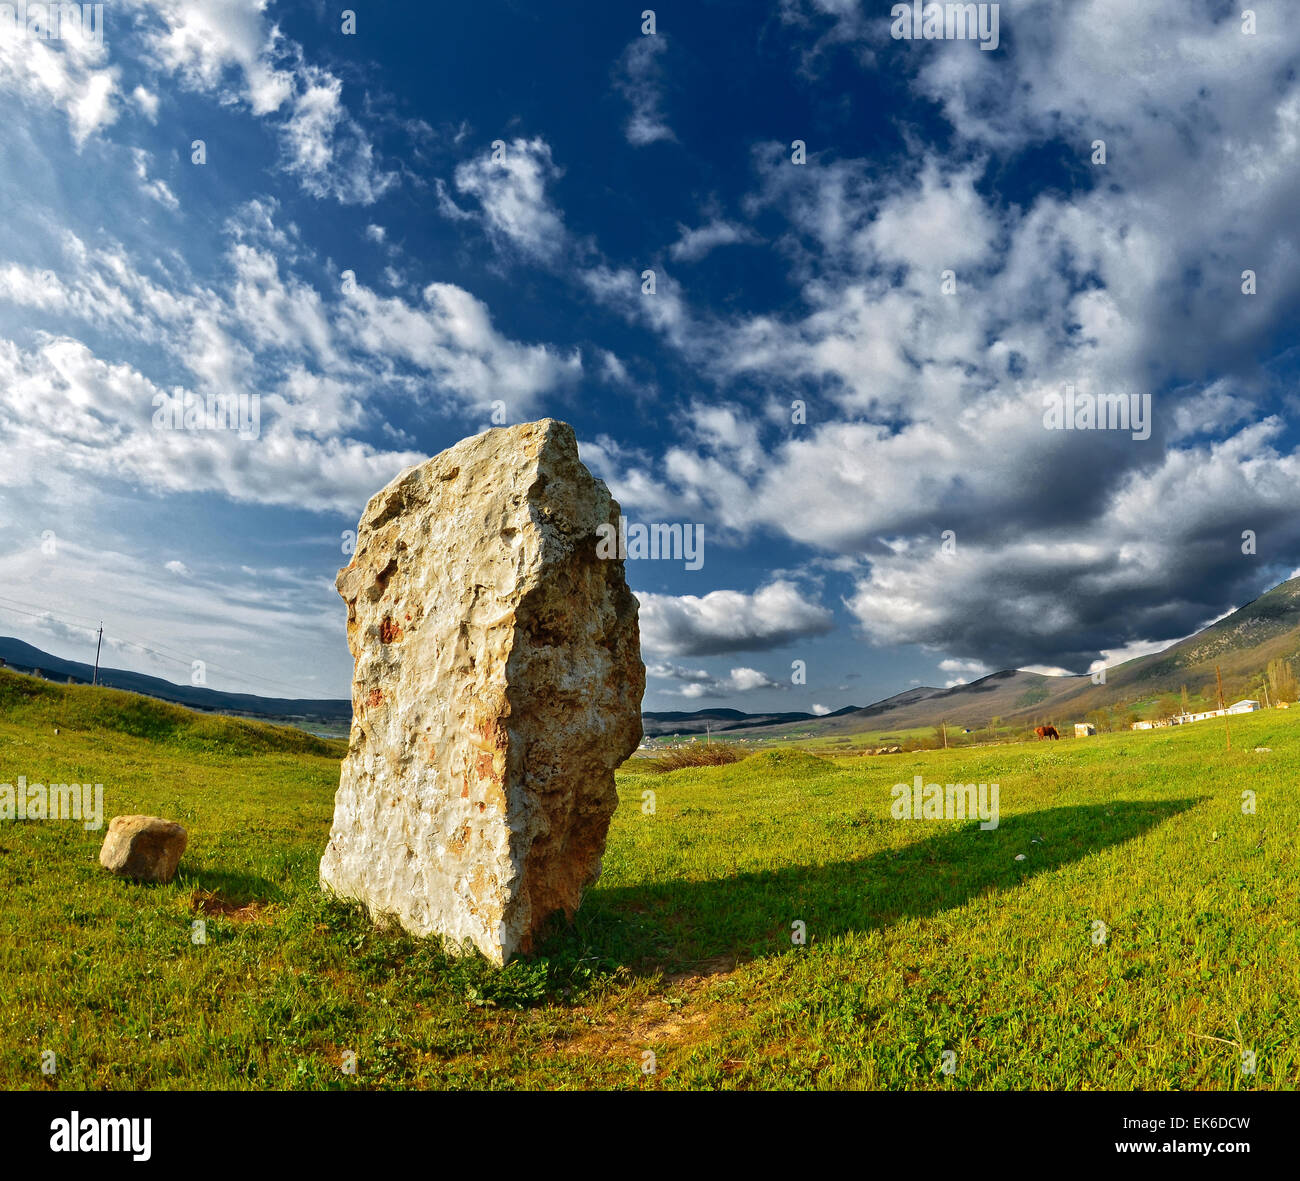 La piedra contra el hermoso cielo con nubes atardecer de verano en Crimea. Foto de stock